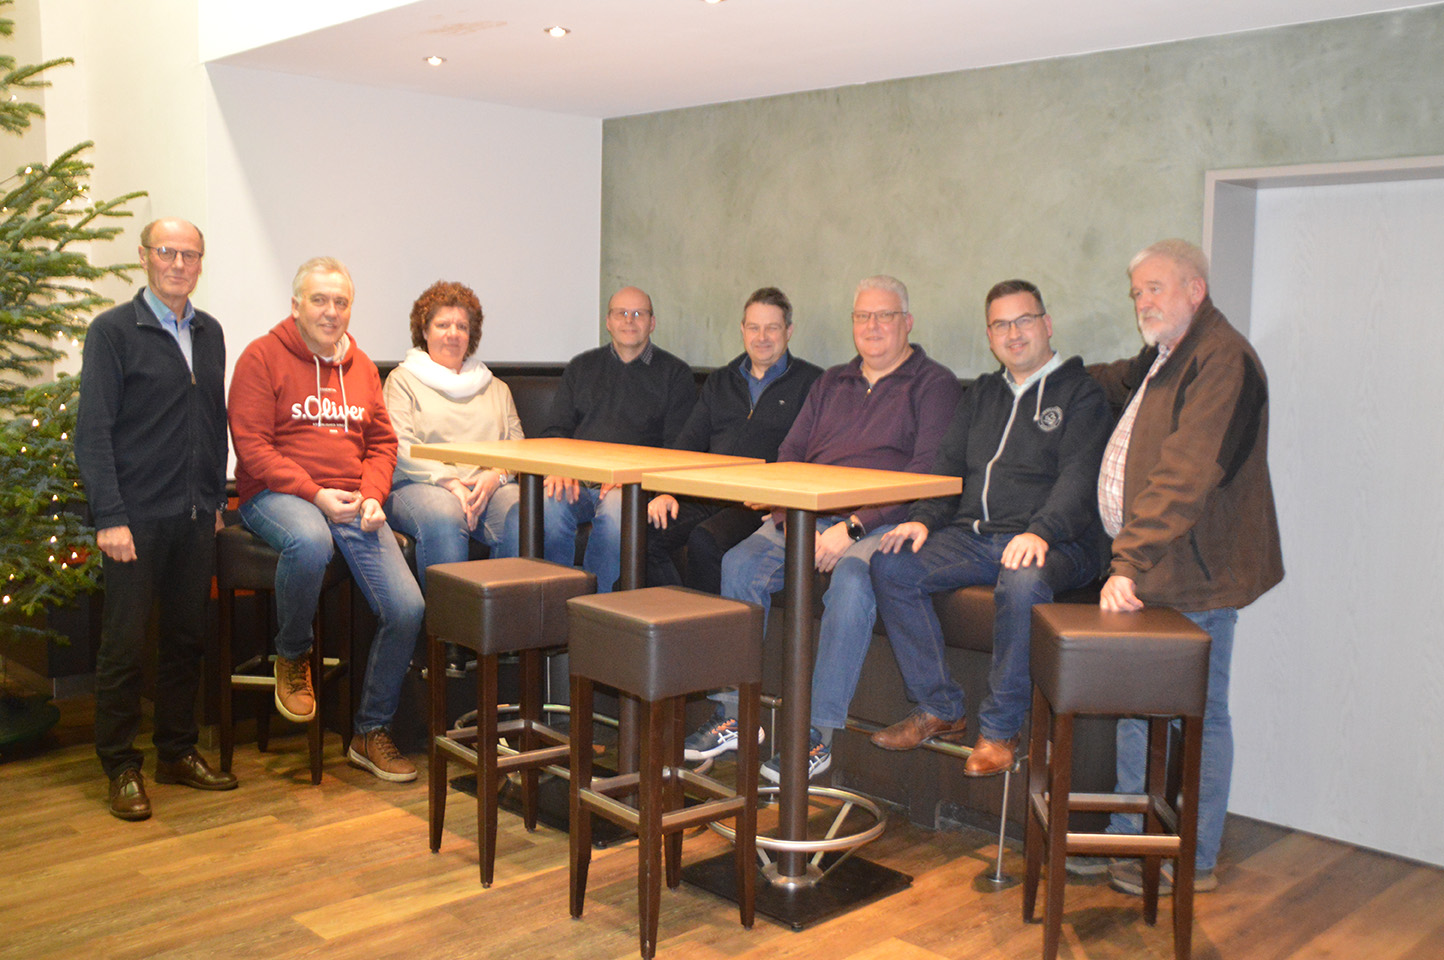 Trafen sich in Biekhofen zum gemeinsamen Austausch: Mitglieder der
Attendorner CDU-Fraktion und Vertreter des Biekhofer Schützenvereins (Foto: privat)